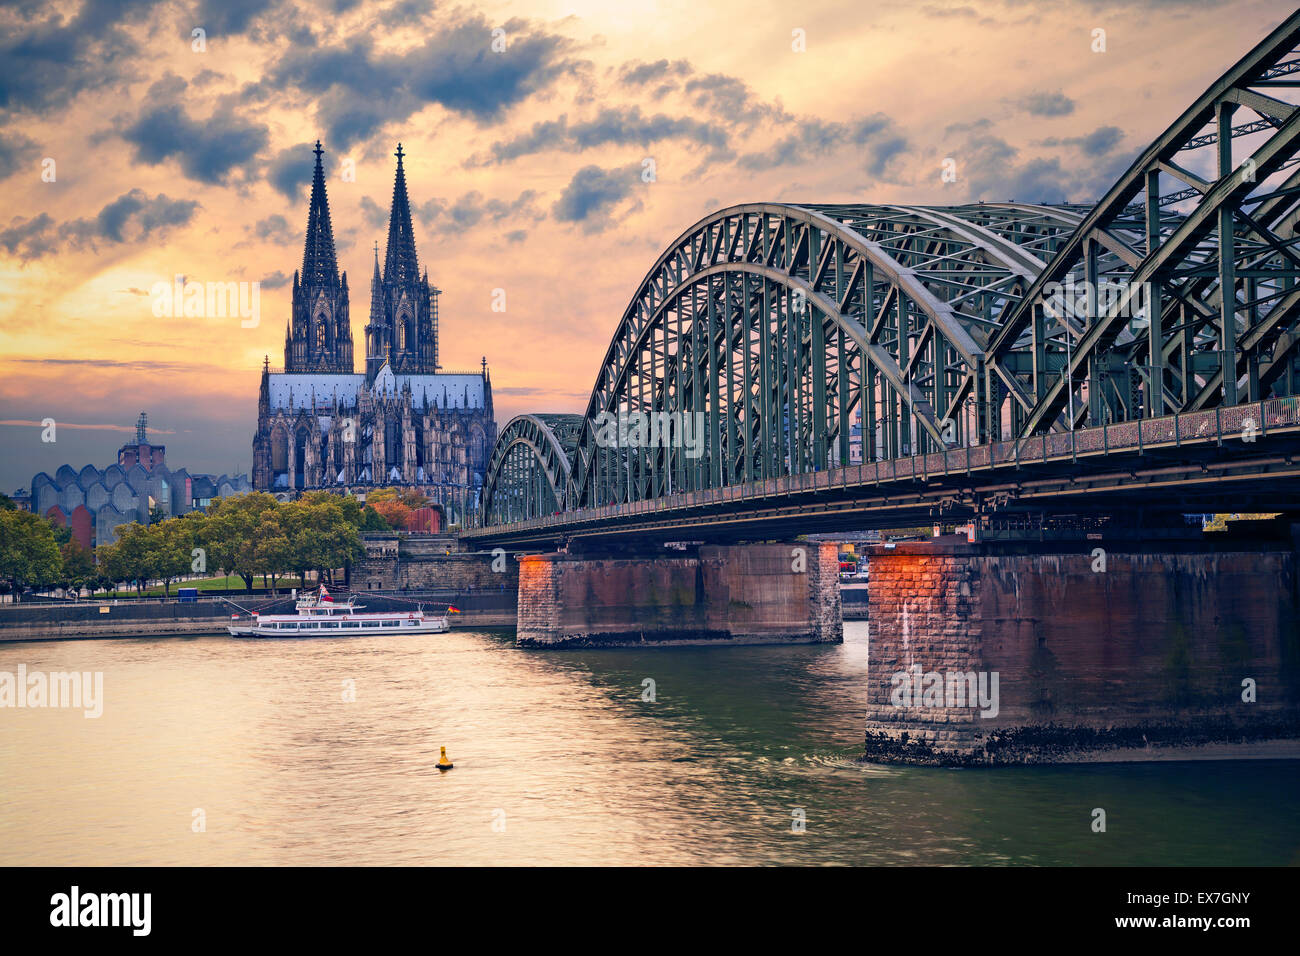 Colonia. Immagine di Colonia con la cattedrale di Colonia e Hohenzollern ponte che attraversa il fiume Reno. Foto Stock